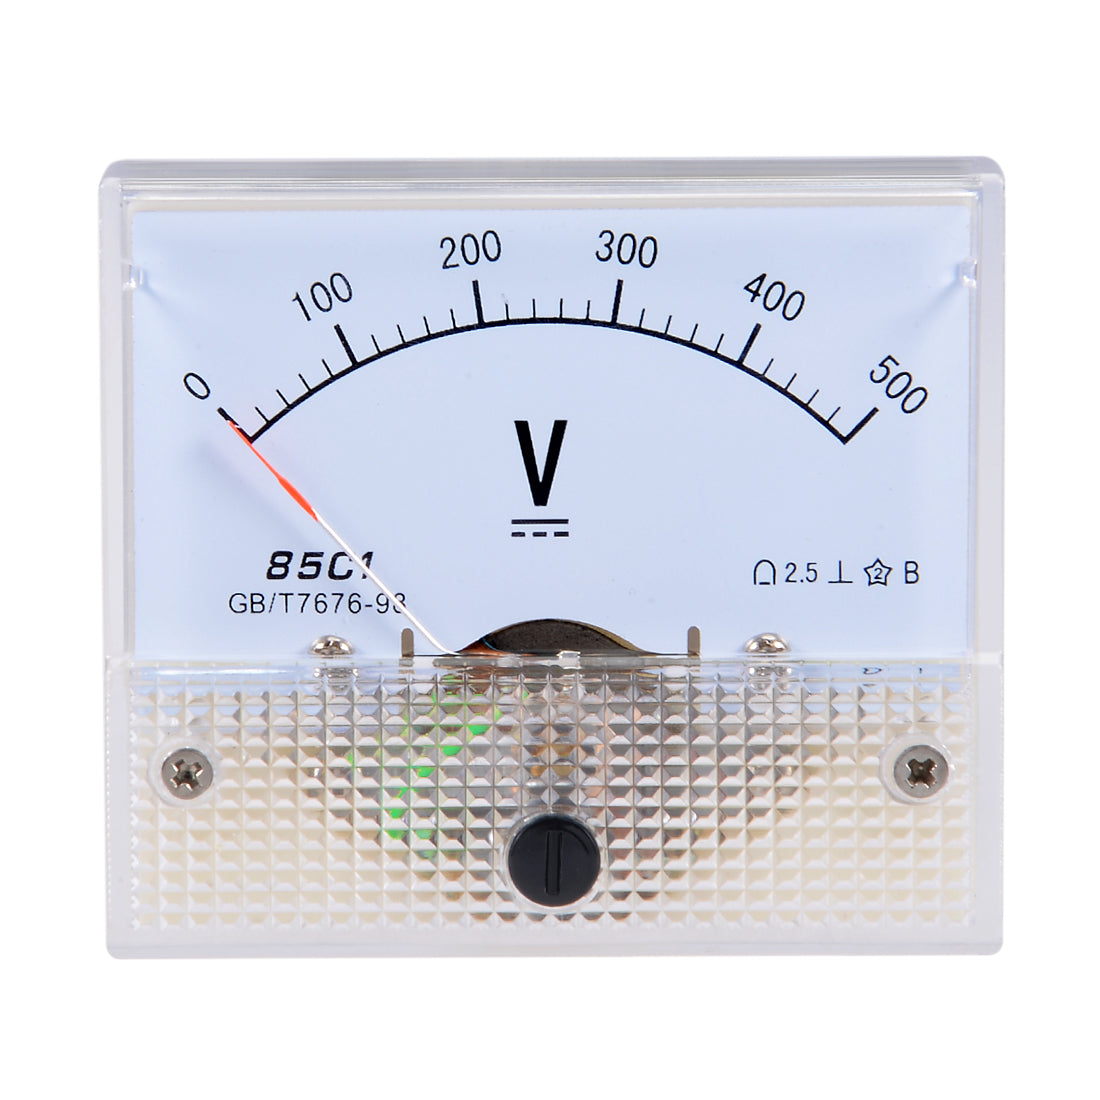 Uxcell DC 0-500V Analog Panel Voltage Gauge Volt Meter 85C1 2.5